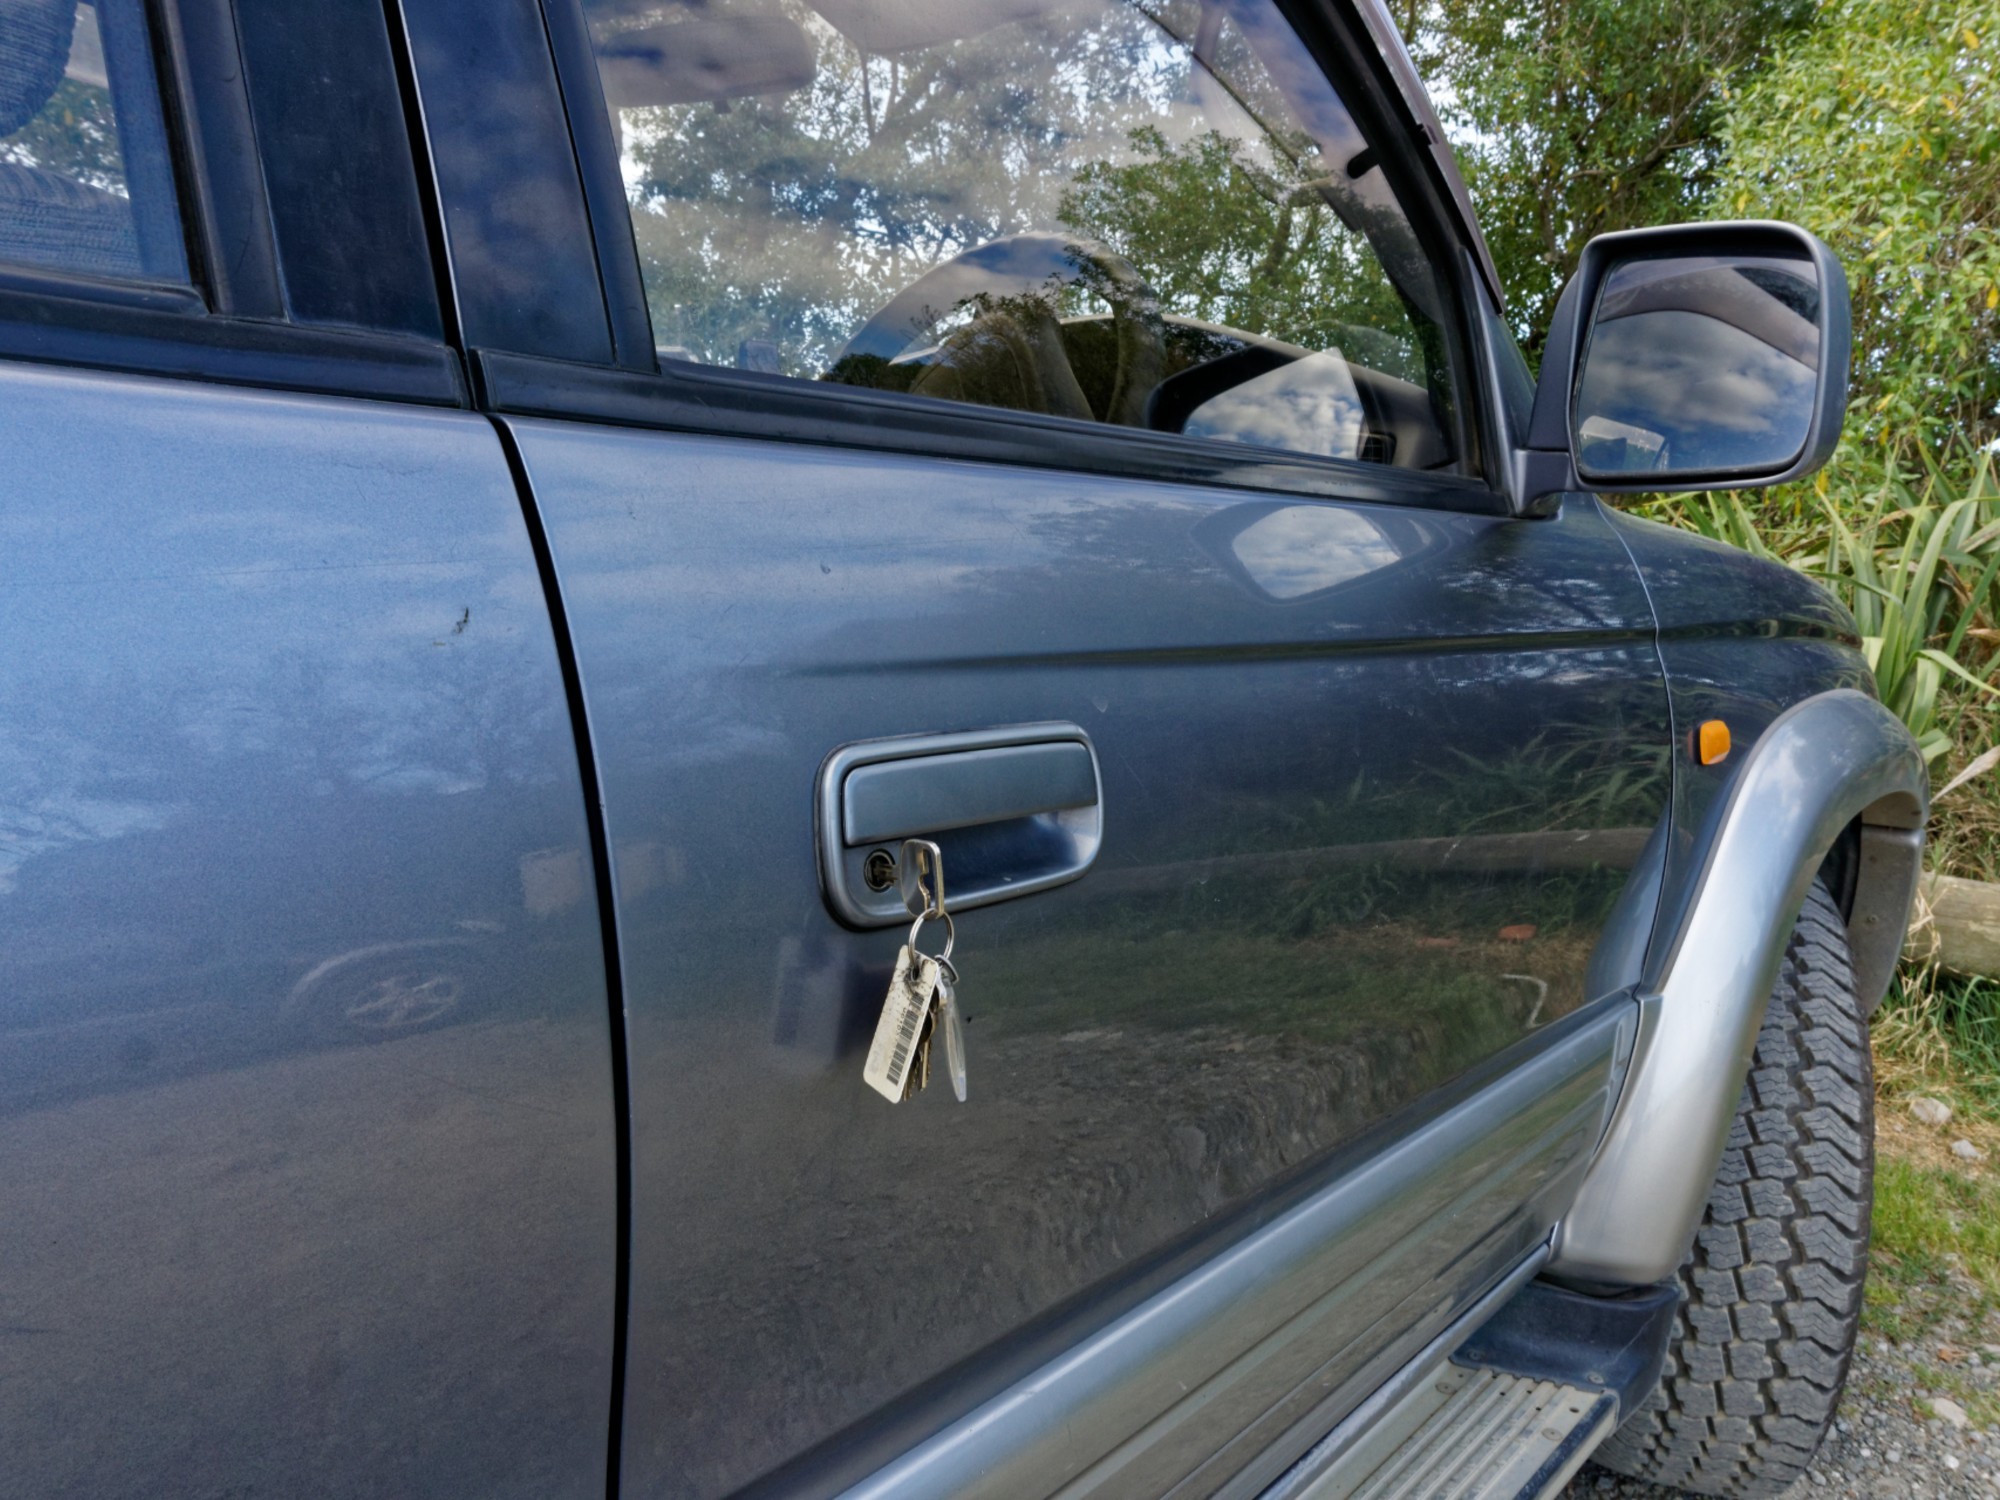 Keys outside car